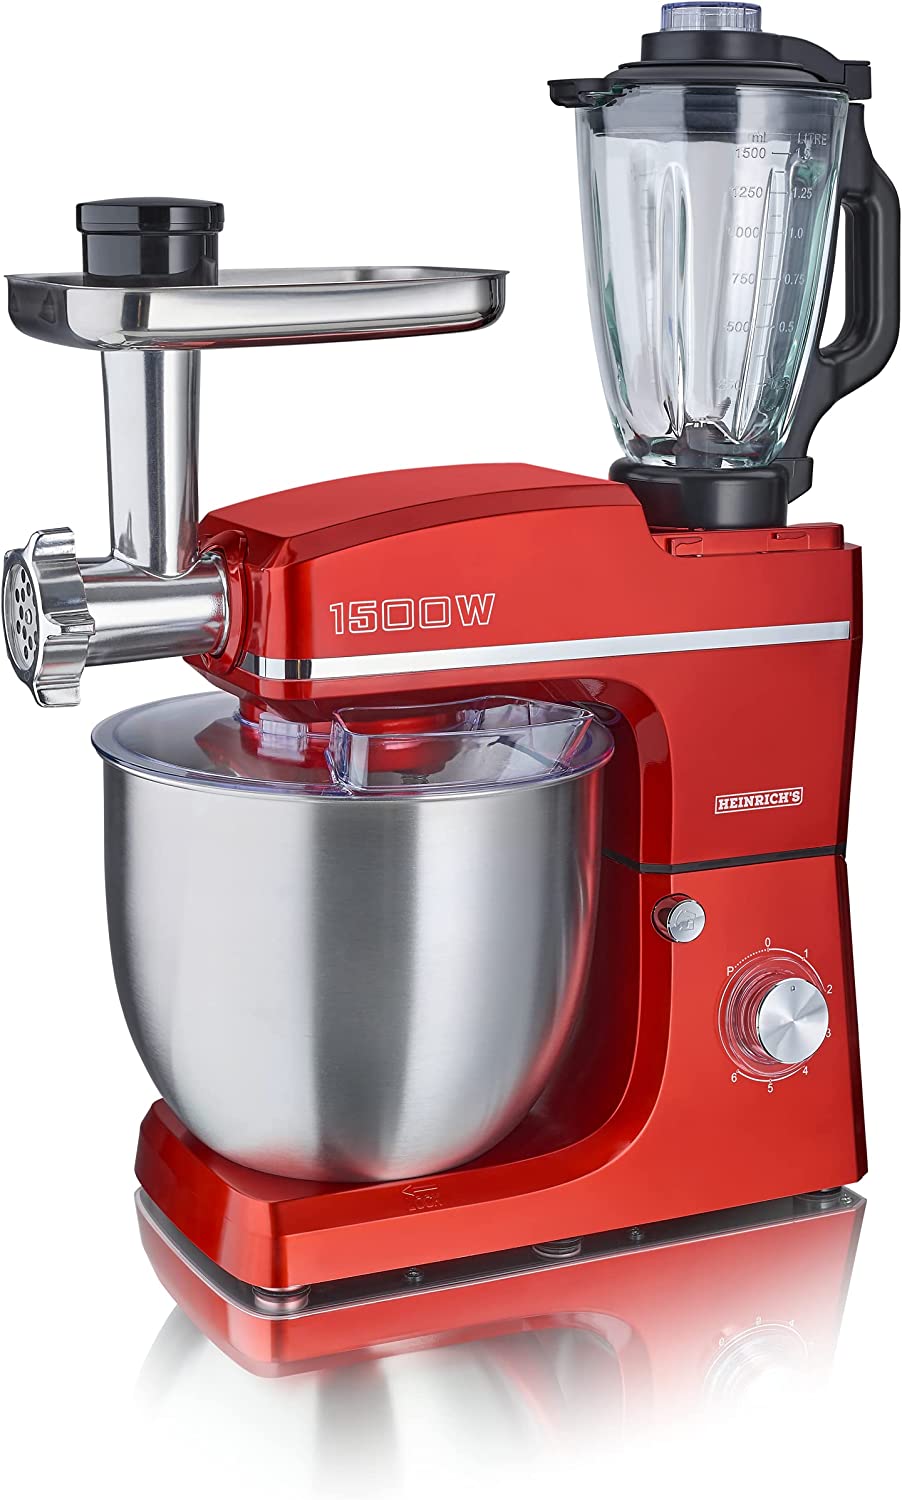 Heinrich´s HEINRICHS 3 in 1 Universal Küchenmaschine, Küchengerät 1500W, 6 Geschwindigkeitsstufen, Multifunktionale Knetmaschine mit Fleischwolf, 1.5L Mixerbehälter, XXXL 10L Edelstahlschüssel (Rot)